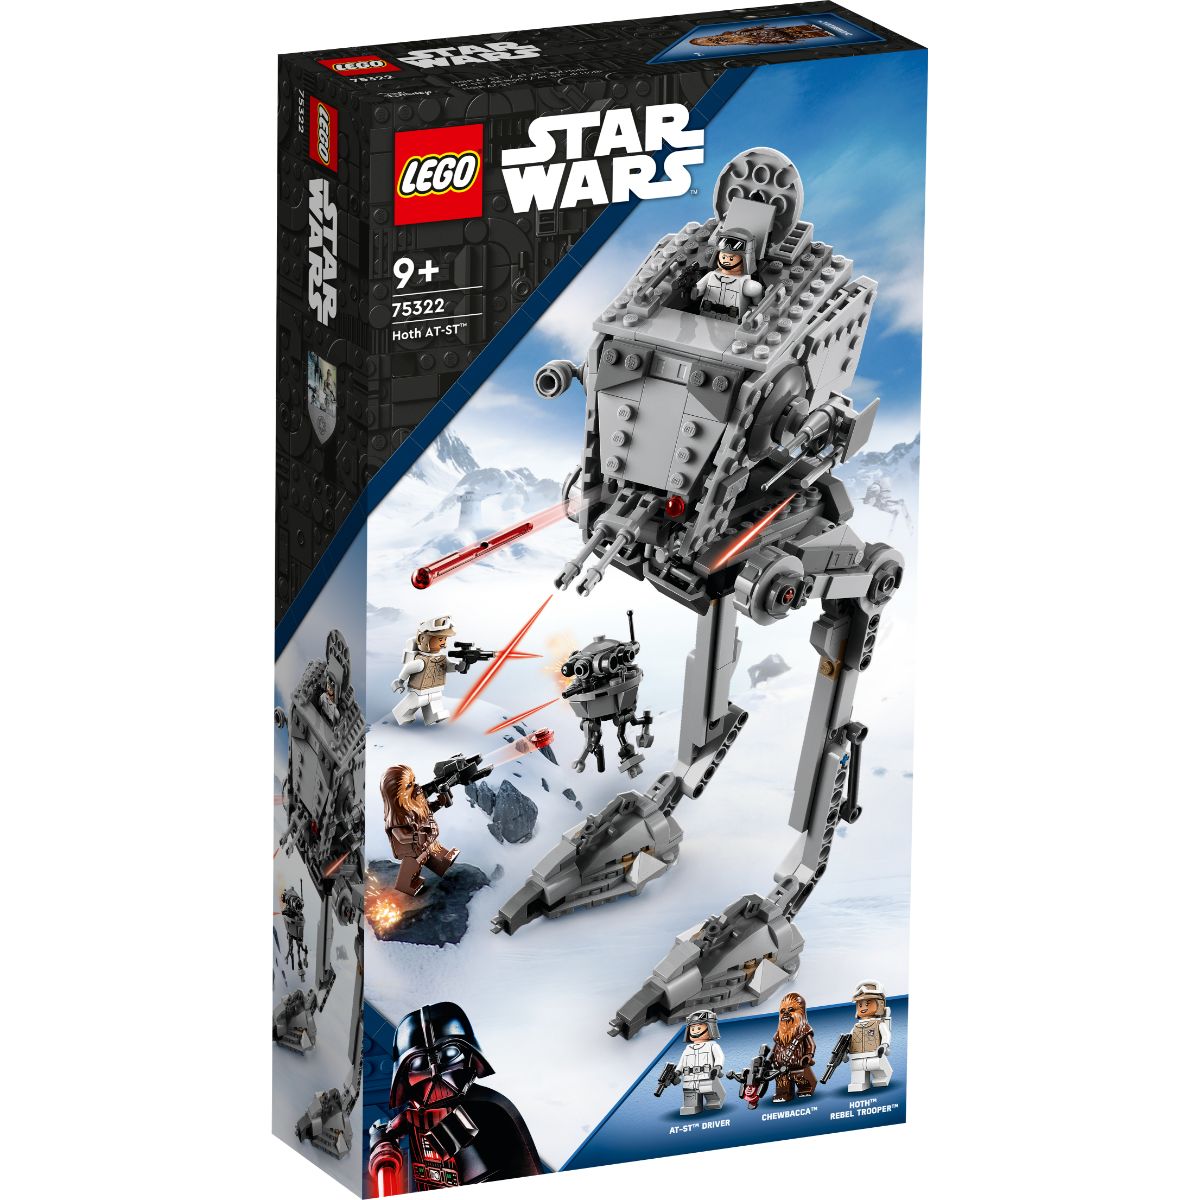 LEGO® Star Wars – Hoth At-St (75322) Lego